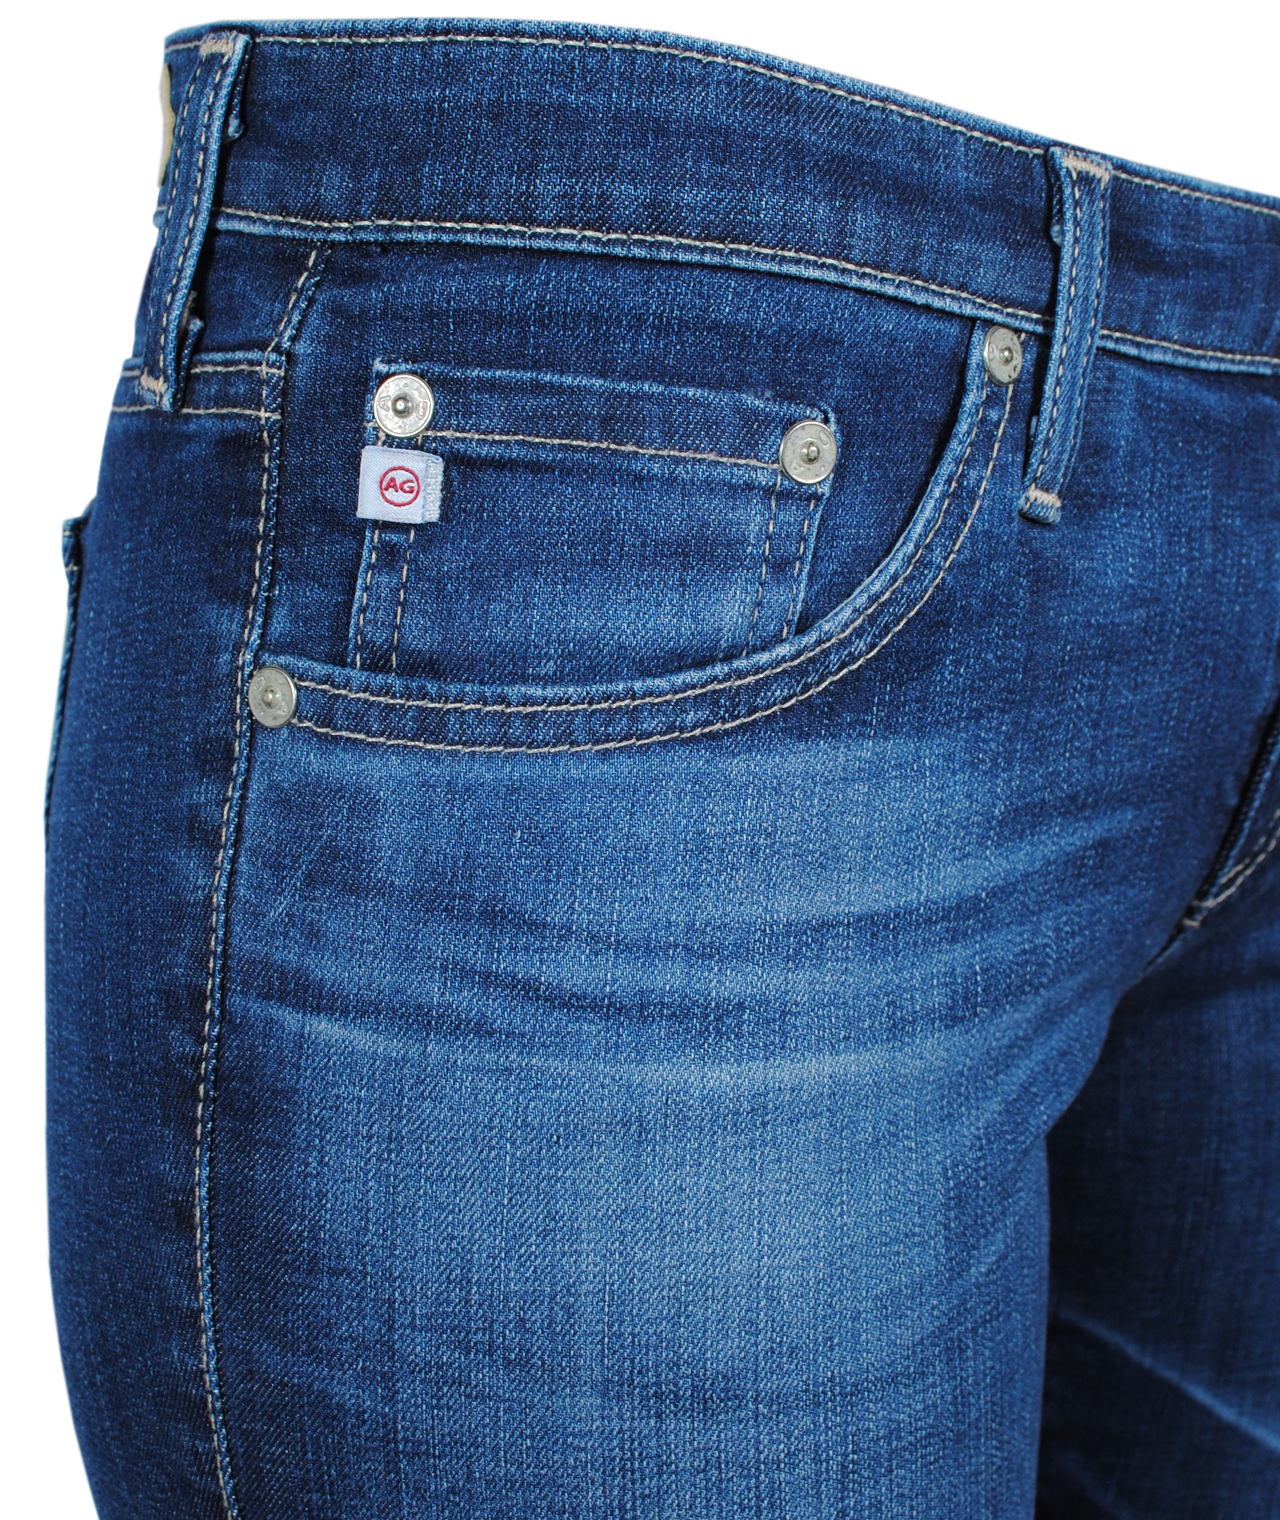 Skinny Jeans Stilt | denim